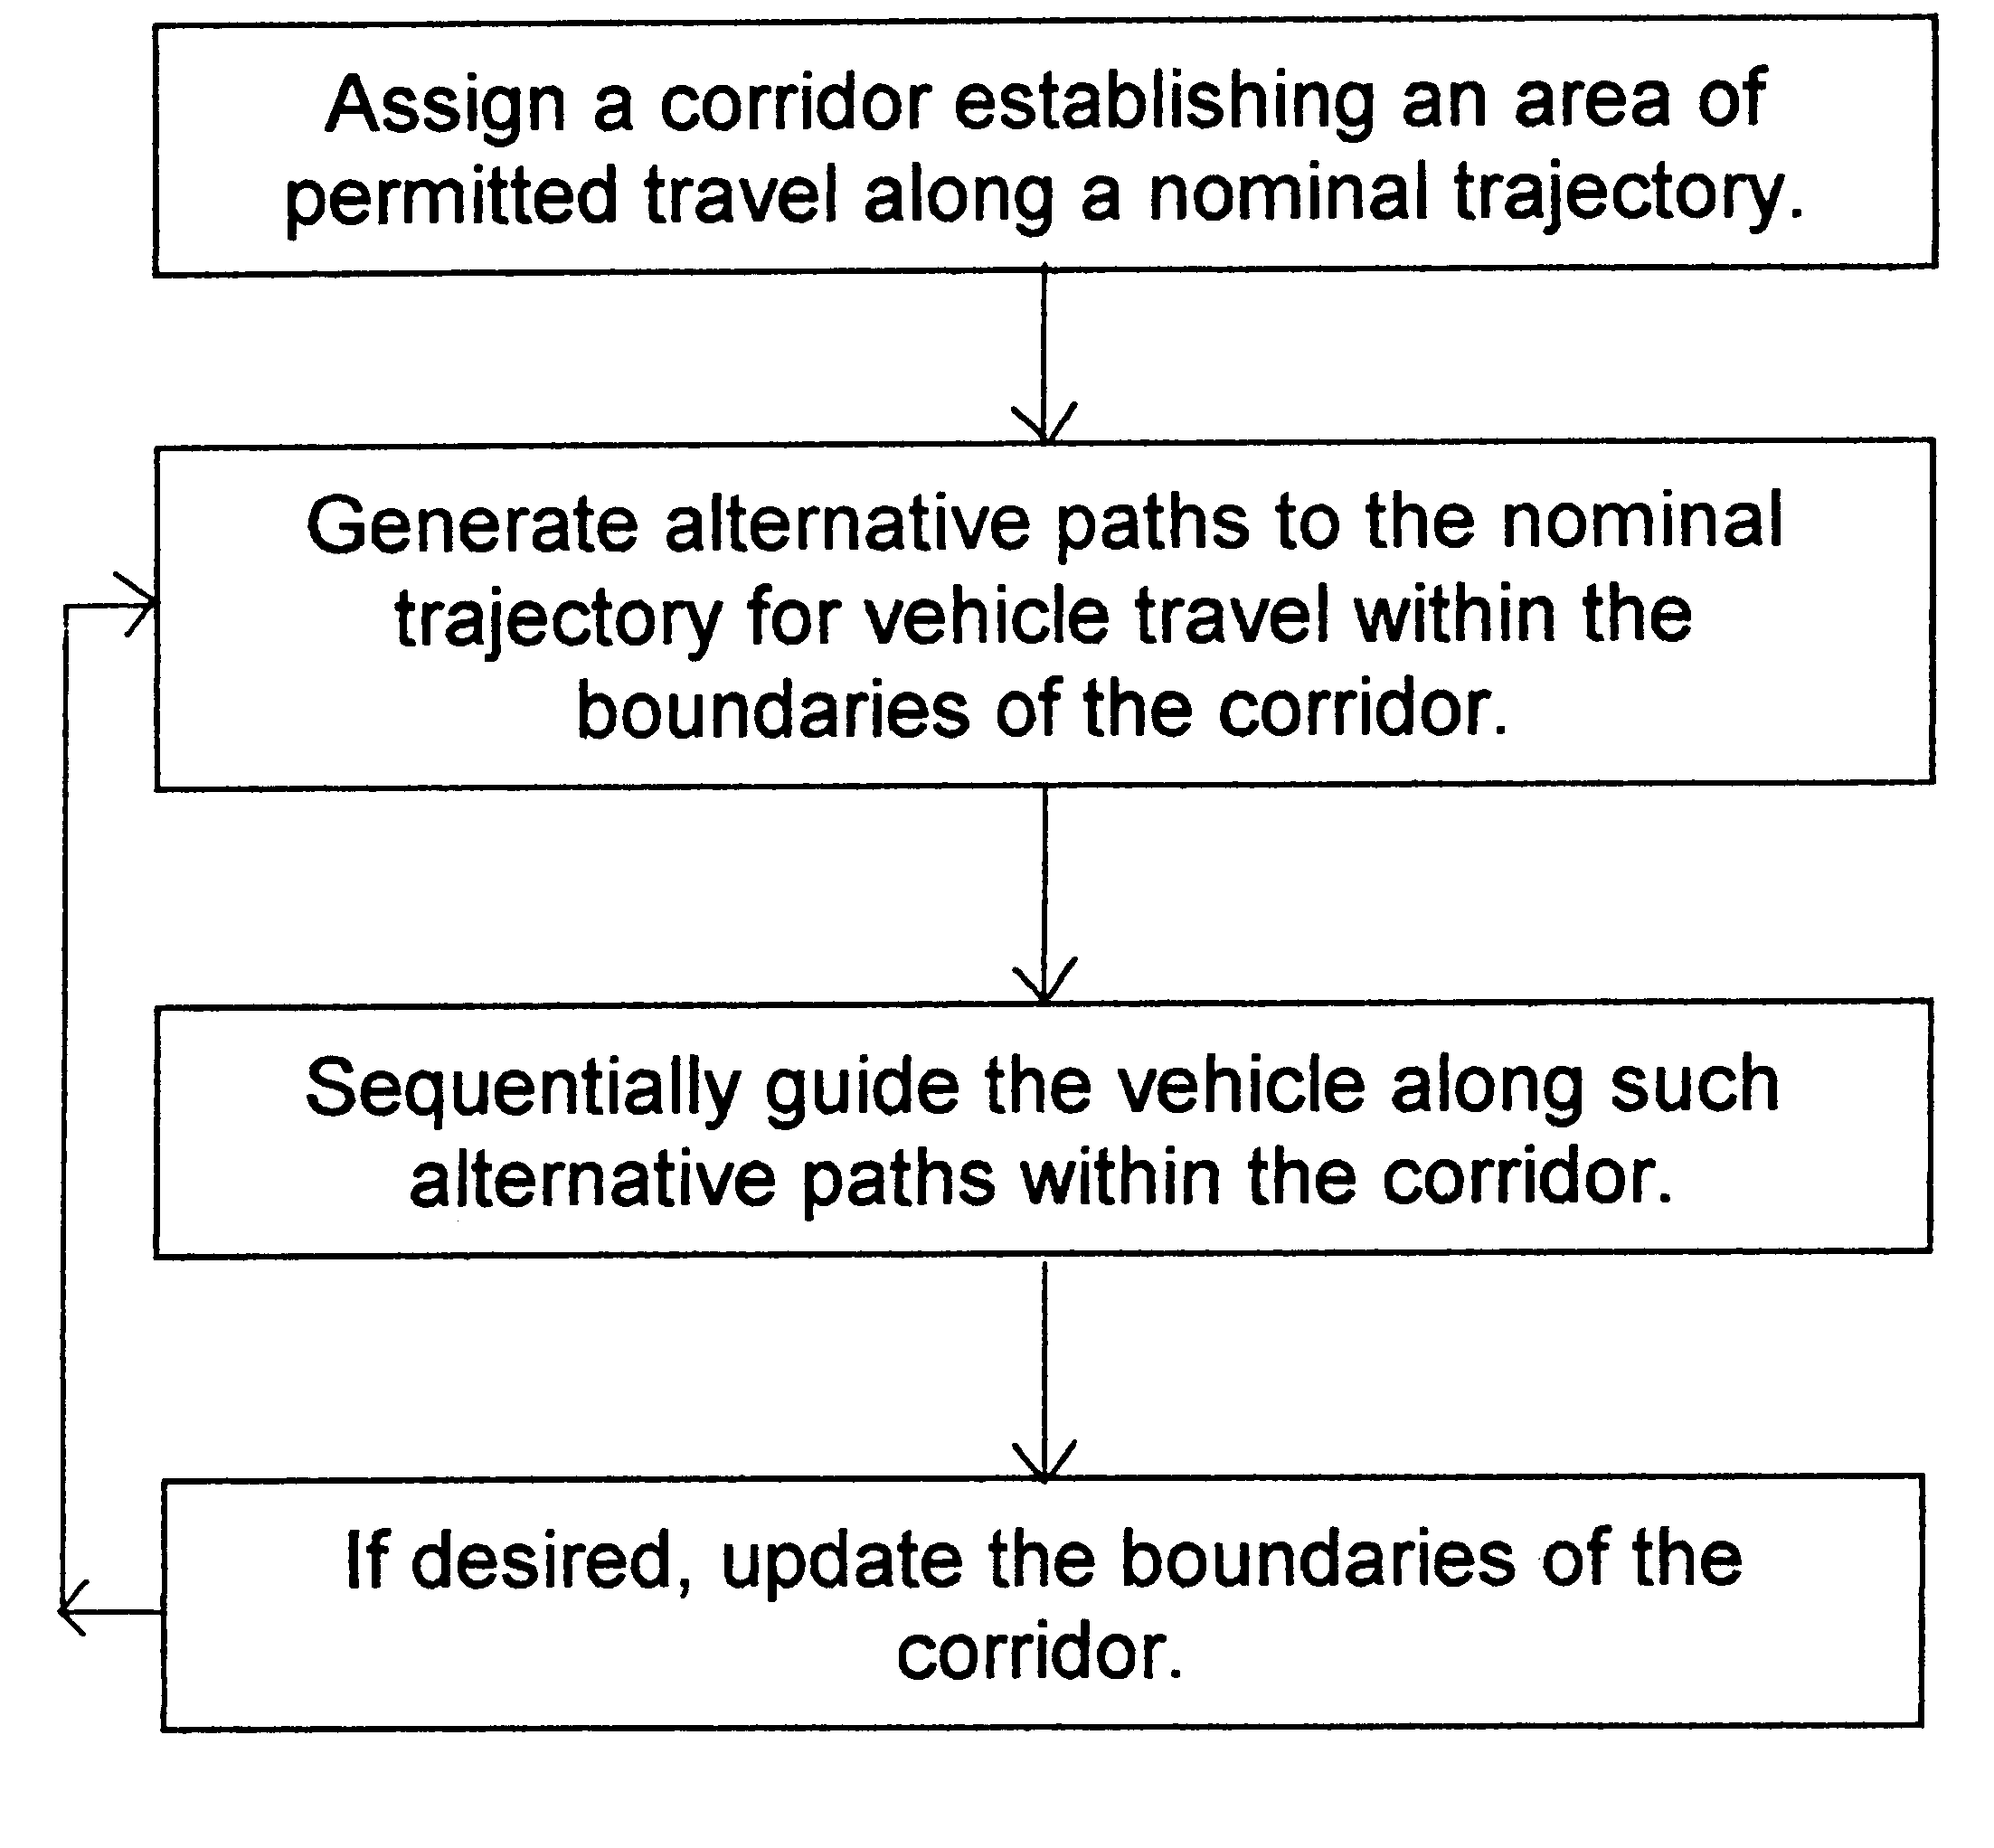 Anti-rut system for autonomous-vehicle guidance